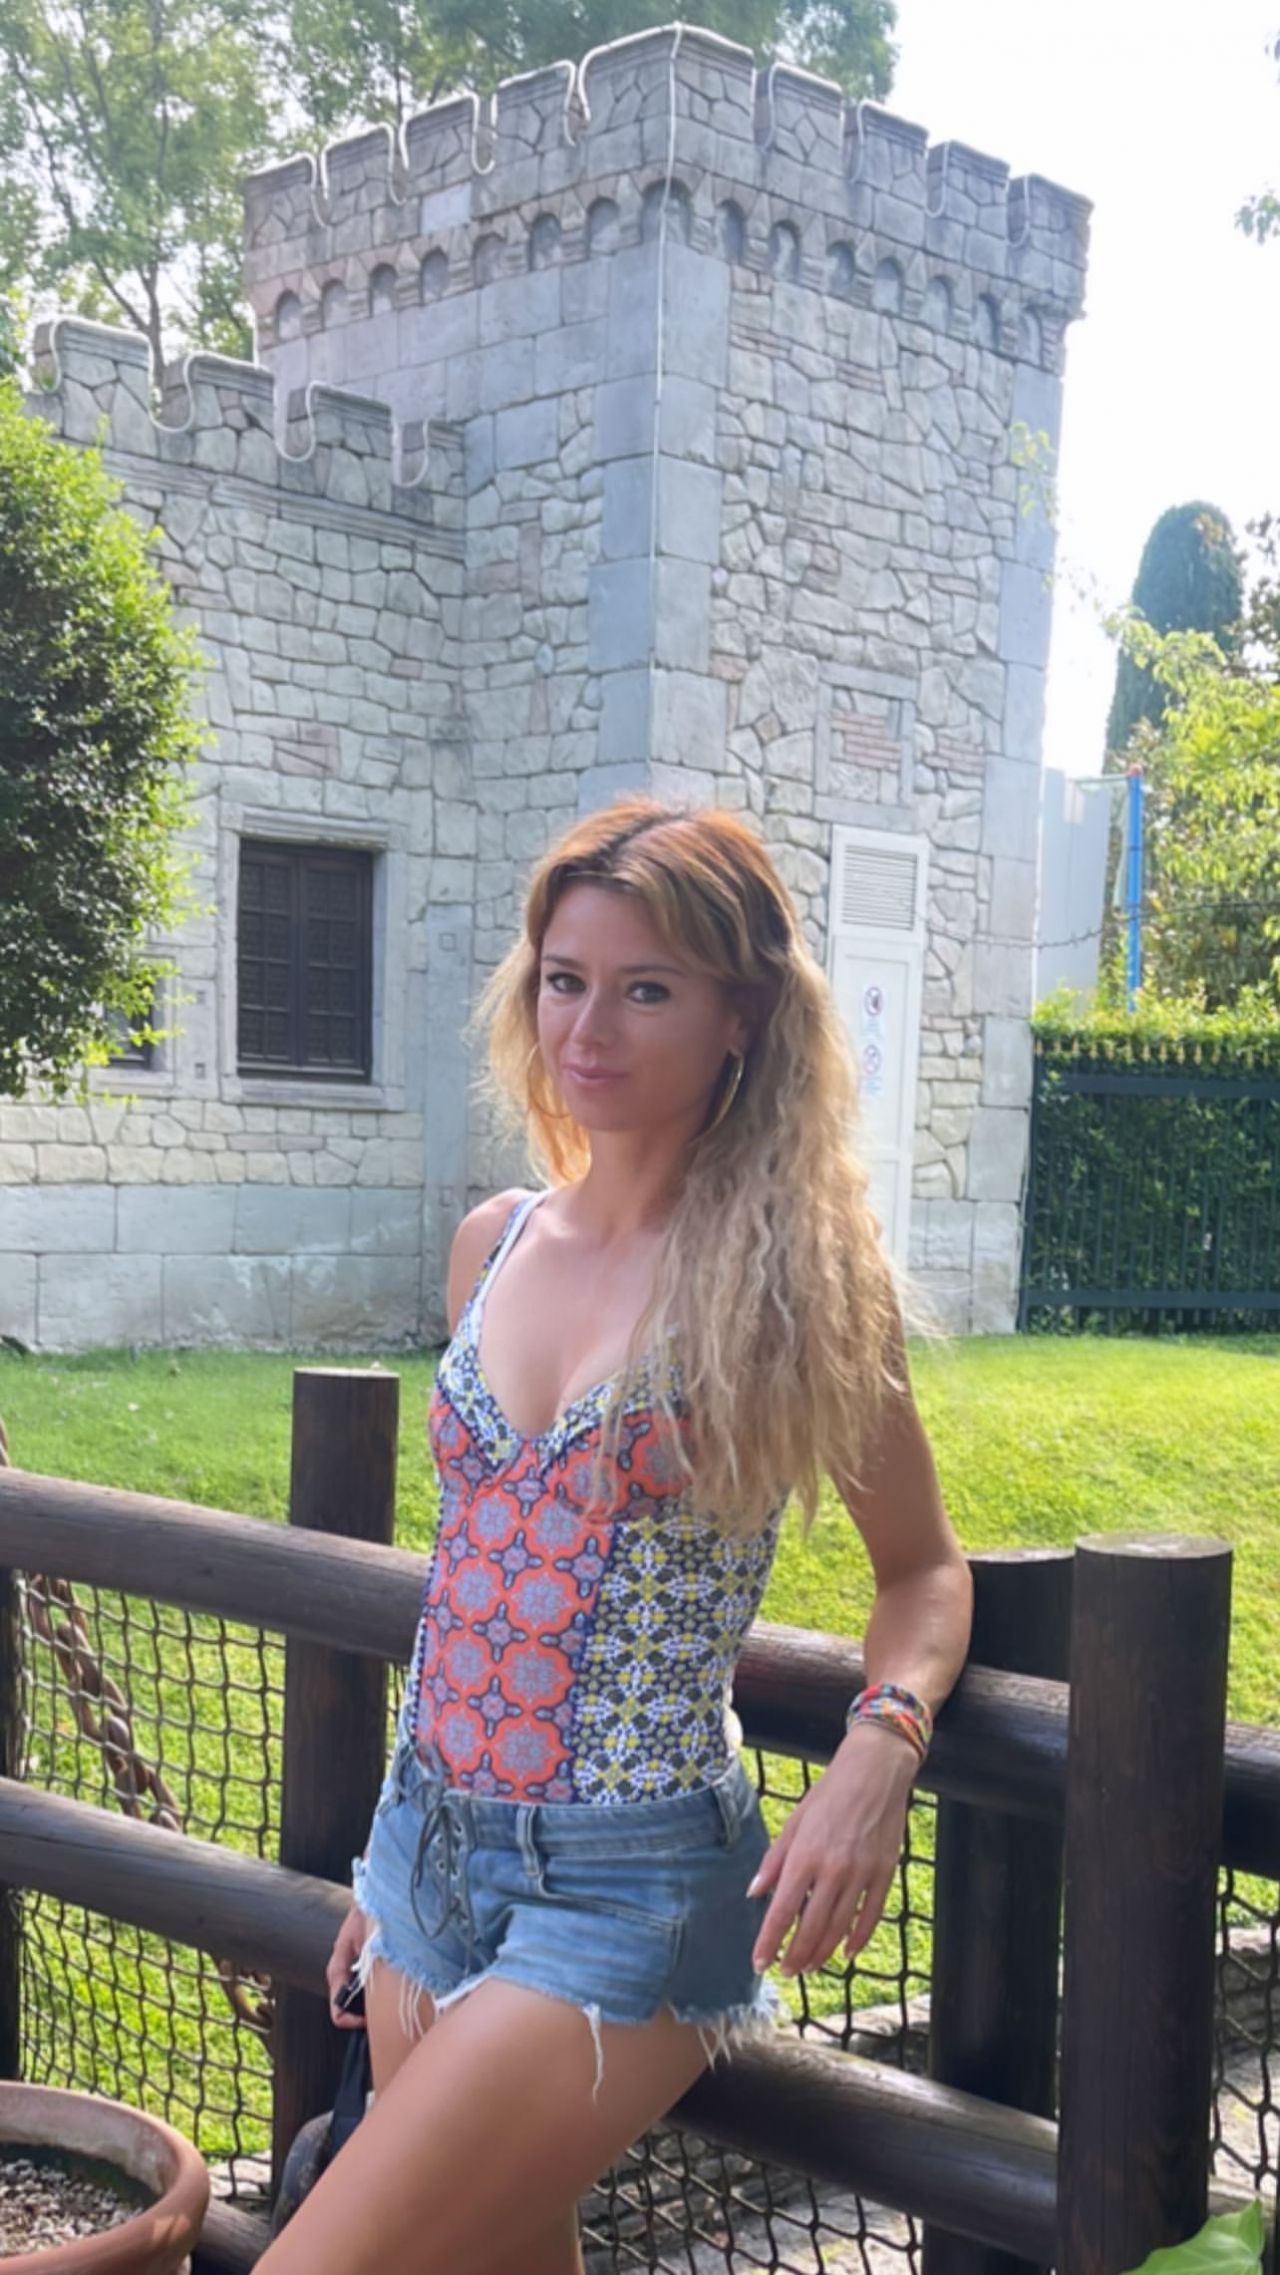 Dispariția suspectă a Camilei Giorgi: o nouă acuzație incredibilă primită de jucătoarea italiană retrasă peste noapte din tenis_14